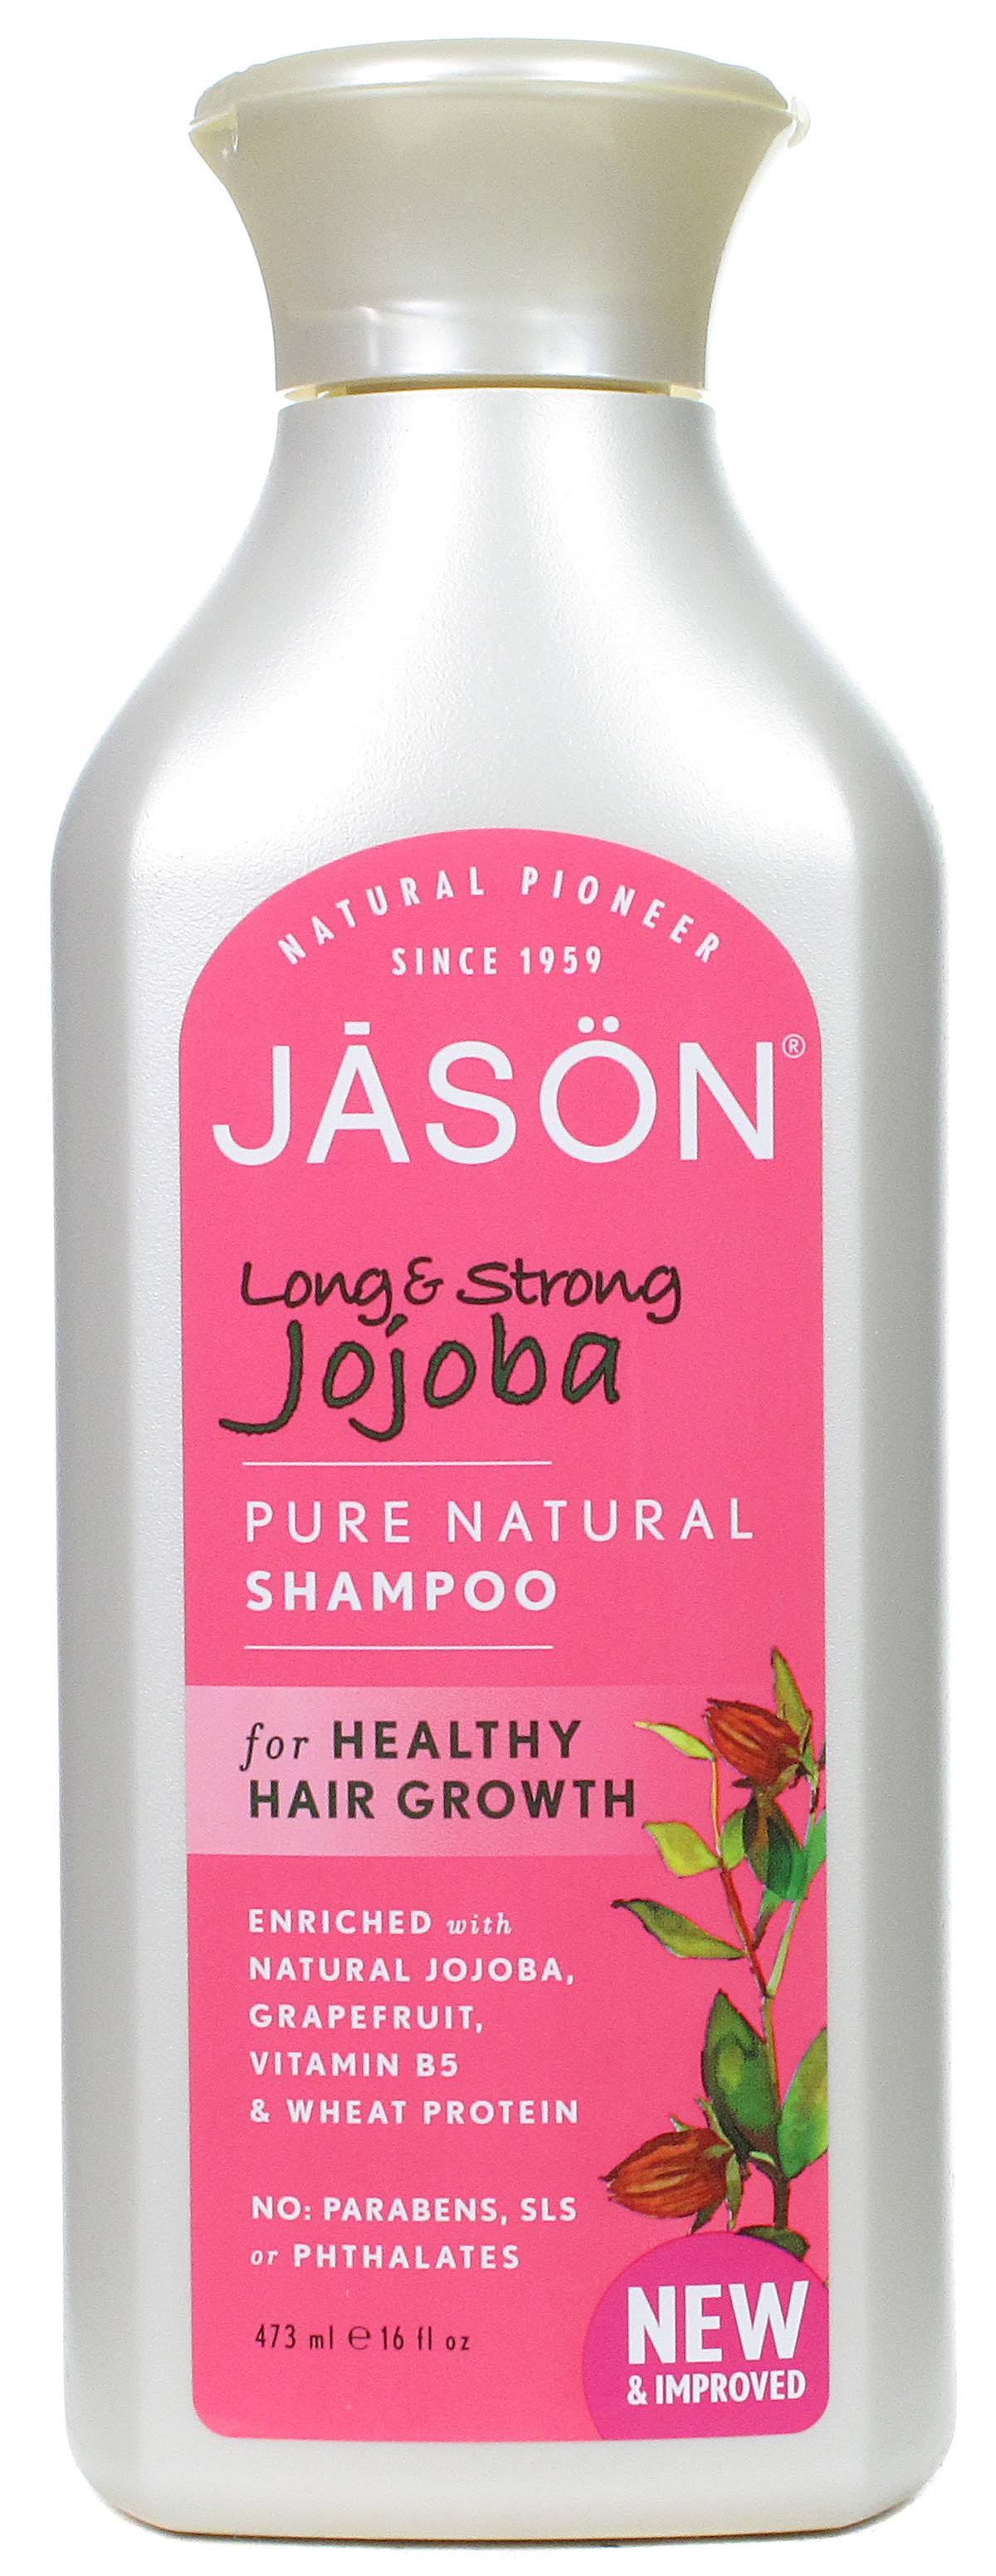 Jason Long & Strong Jojoba Pure Natural Shampoo